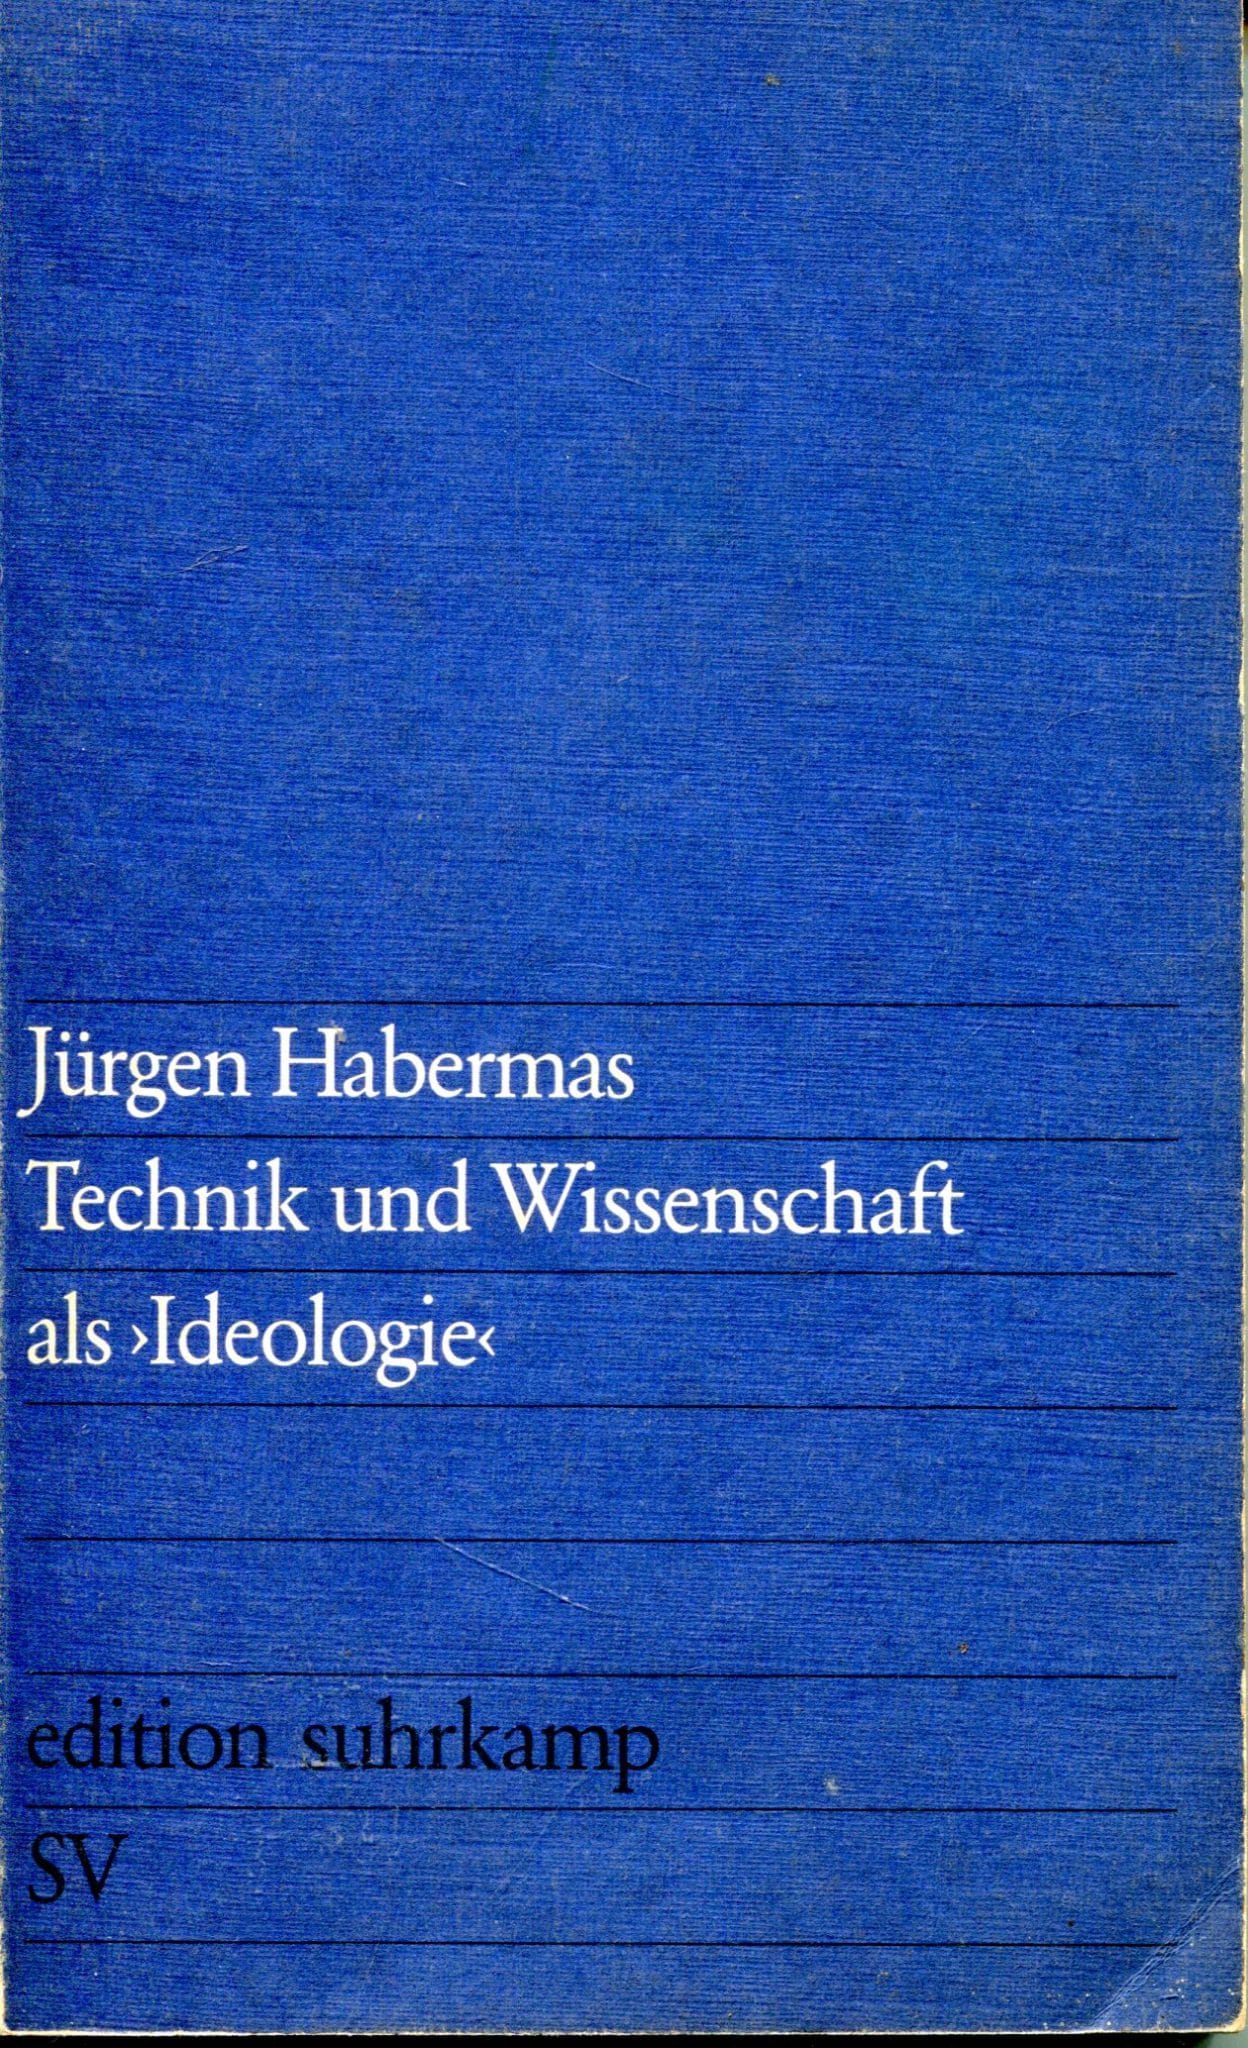 Technik und Wissenschaft als 'Ideologie' Jürgen Habermas